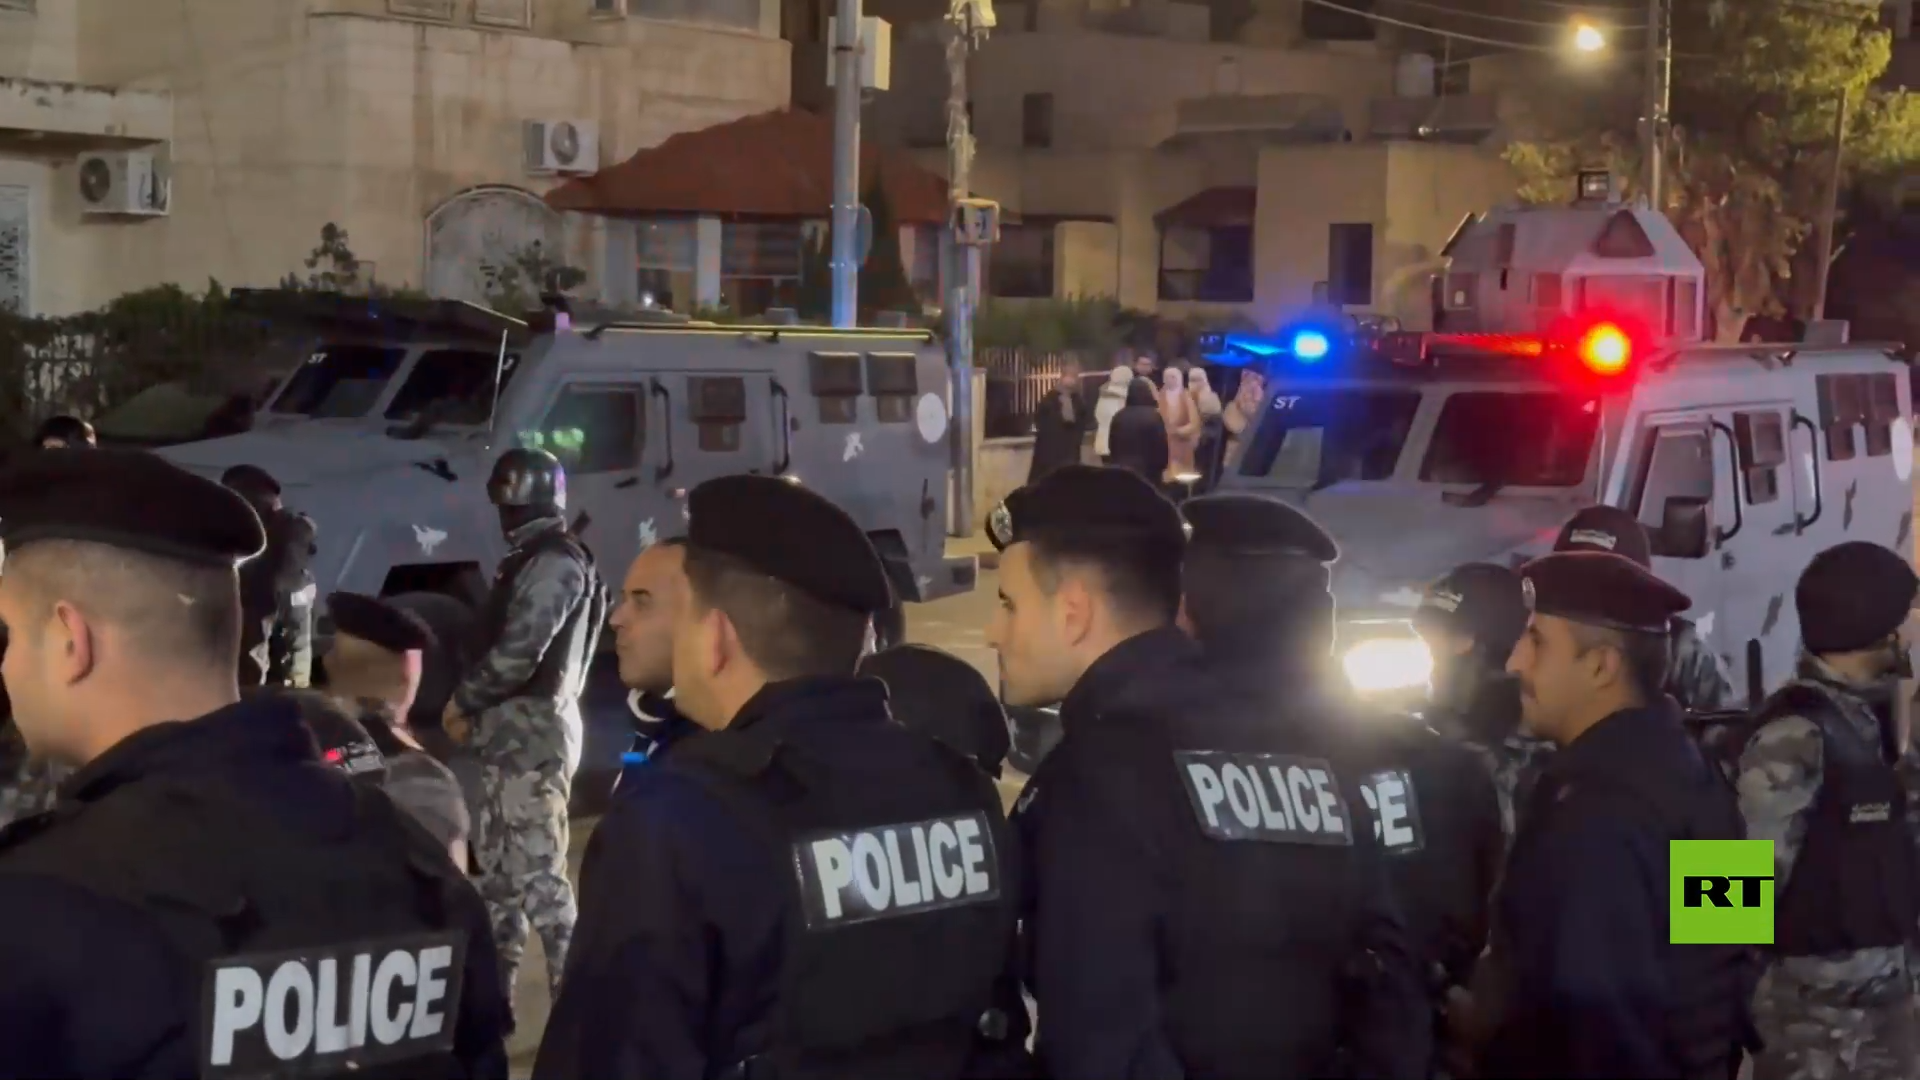 الشرطة الأردنية تفرق مسيرة مؤيدة لفلسطين بالقرب من السفارة الإسرائيلية